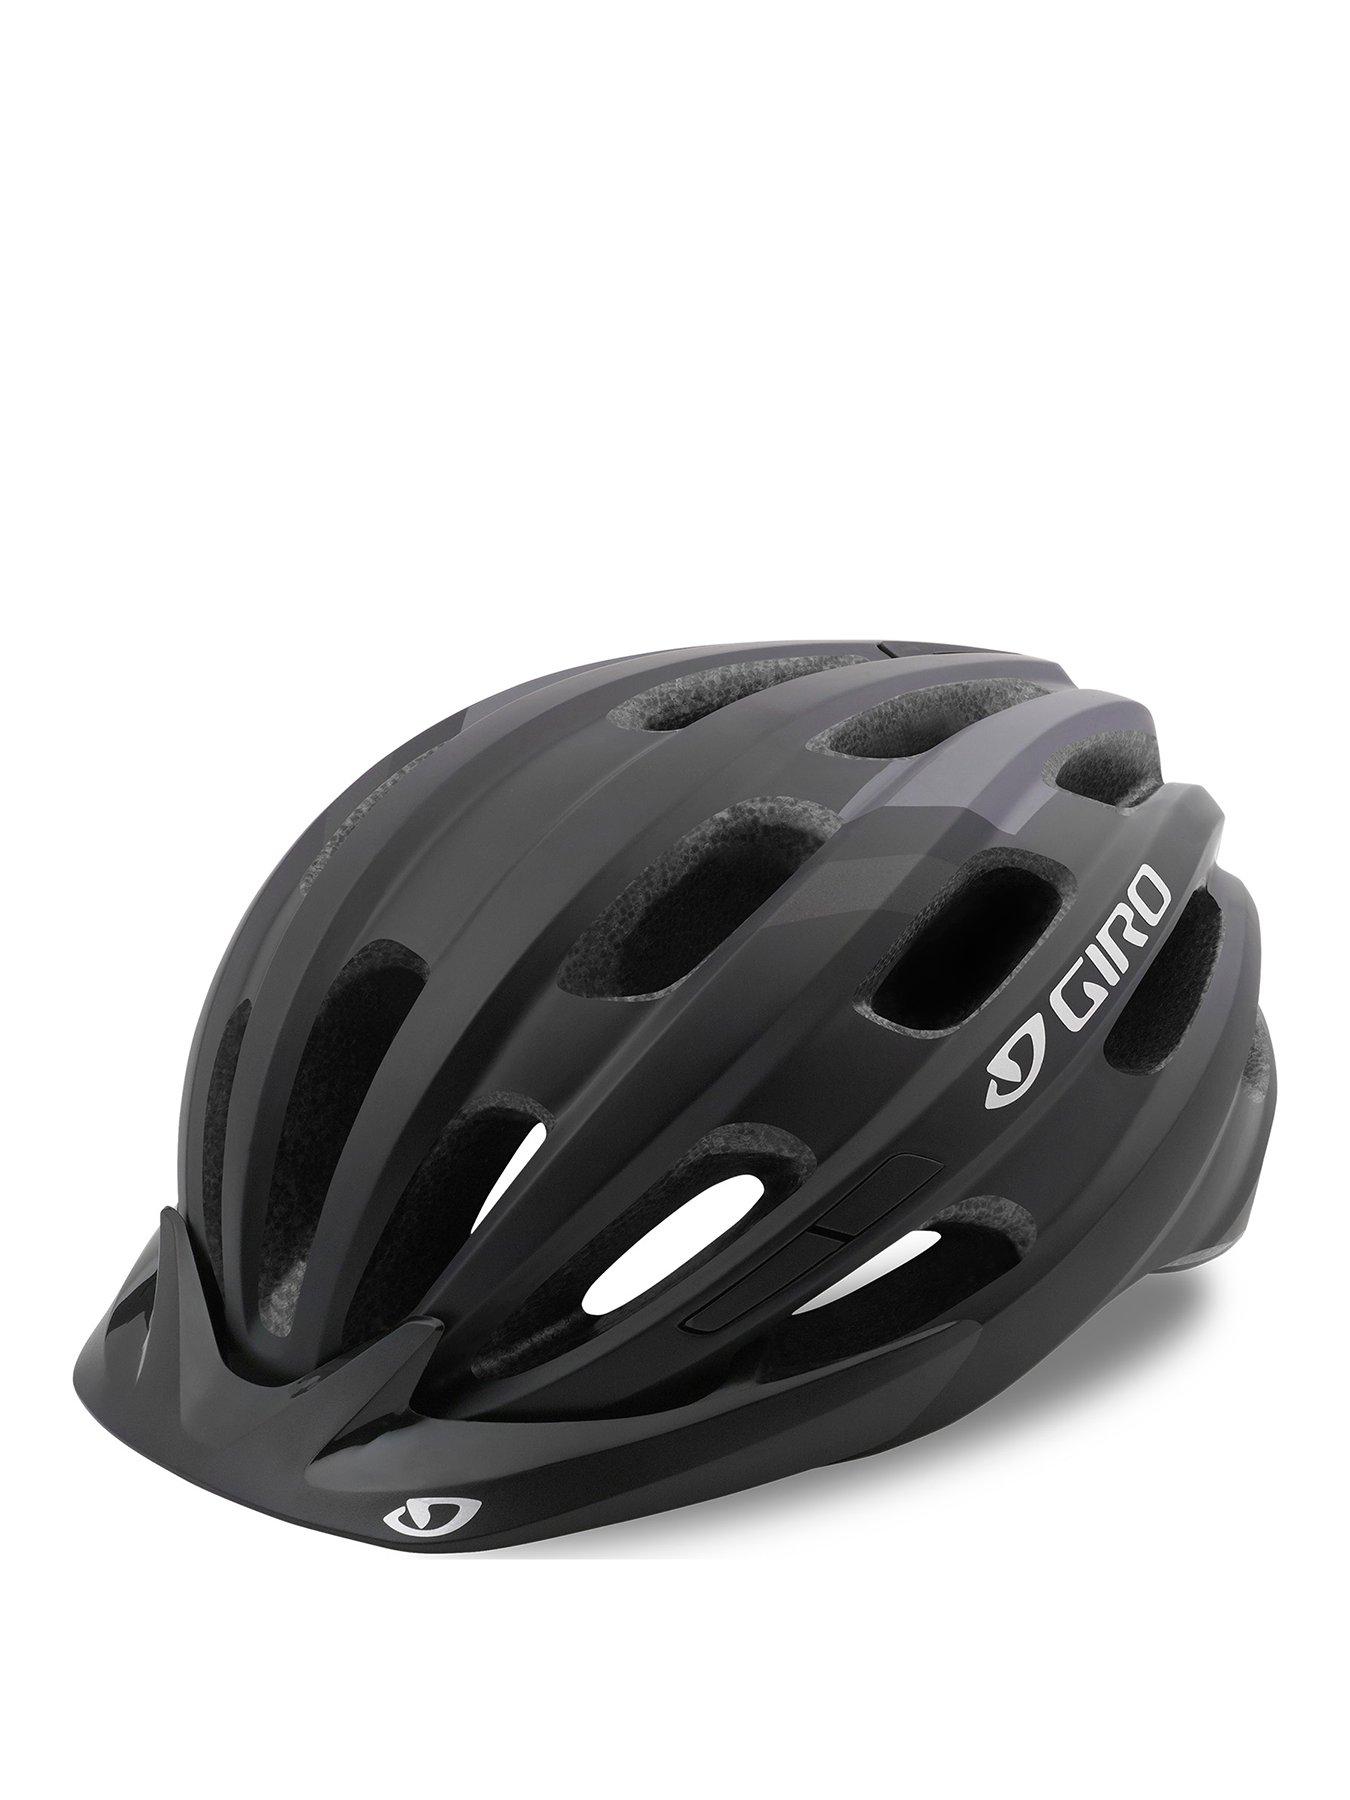 Giro Register Bike Safety Helmet With Visor 22 Vents Unisize 54-61cm 6 Colours 